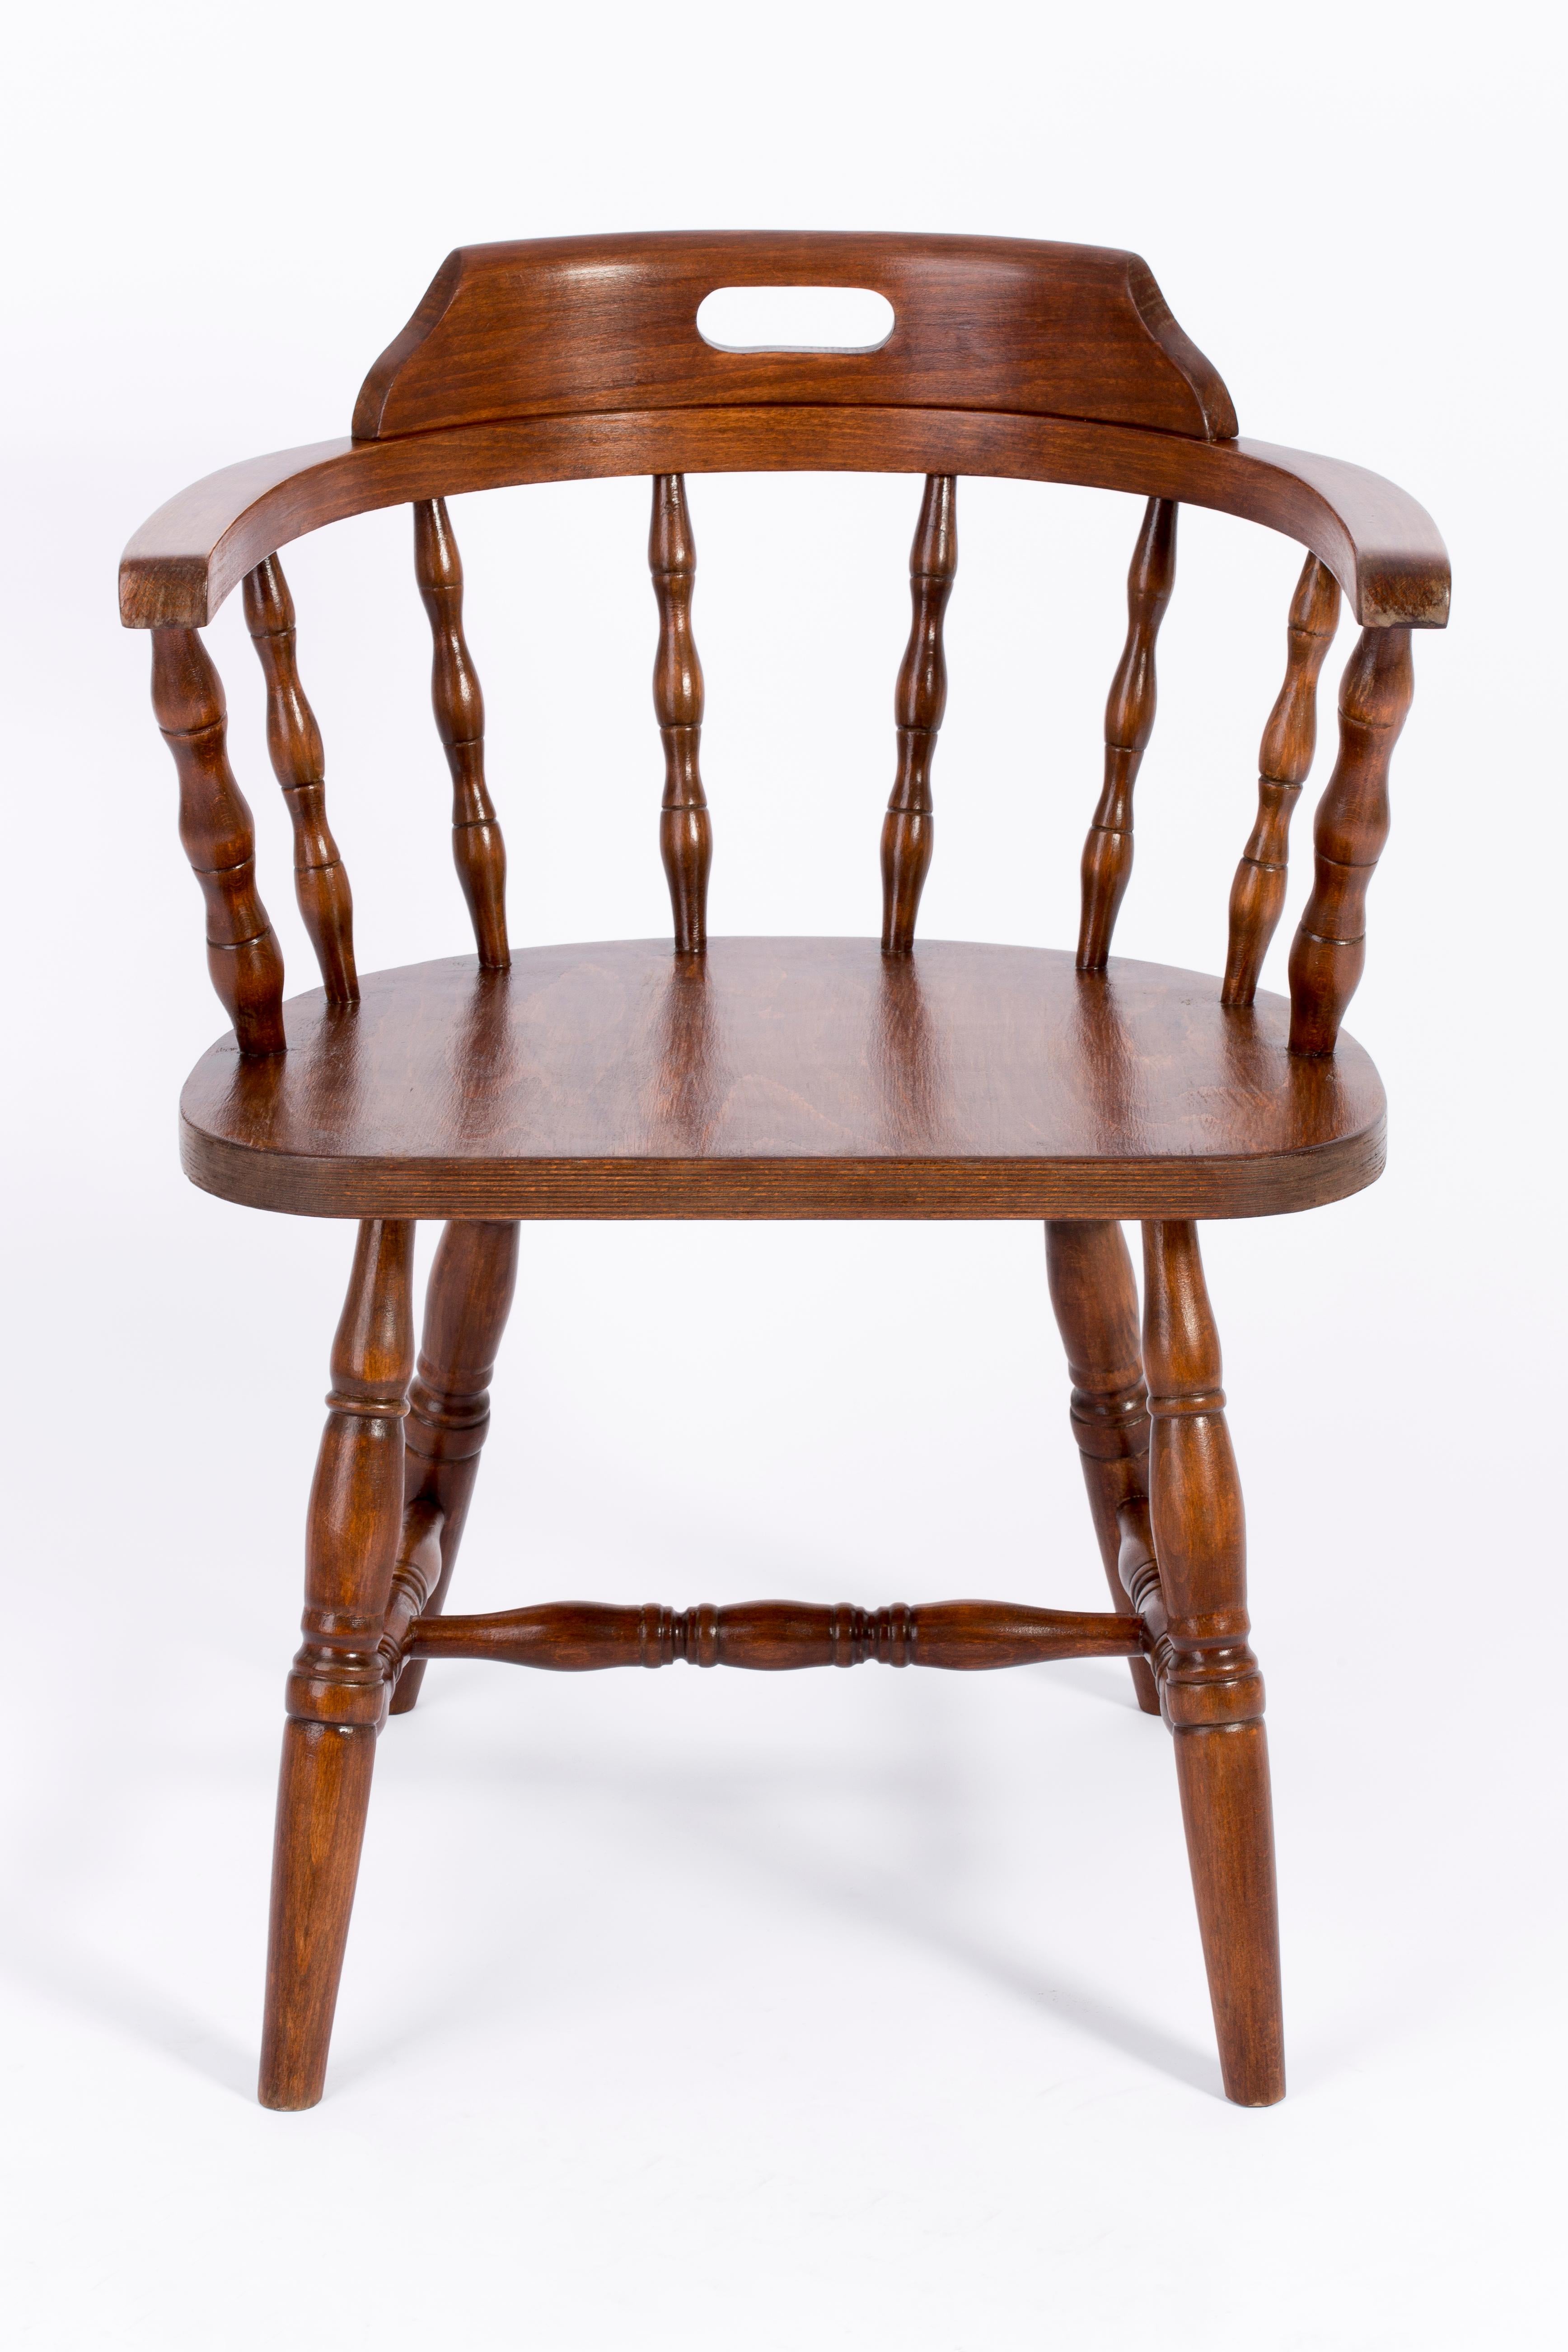 Stuhl entworfen von Prof. Rajmund Halas. Hergestellt aus Buchenholz. Stuhl ist nach einer kompletten Renovierung, die Holzarbeiten wurden aufgefrischt. Der Stuhl ist stabil und sehr formschön. Der Stuhl wurde in einer ehemaligen Möbelfabrik in